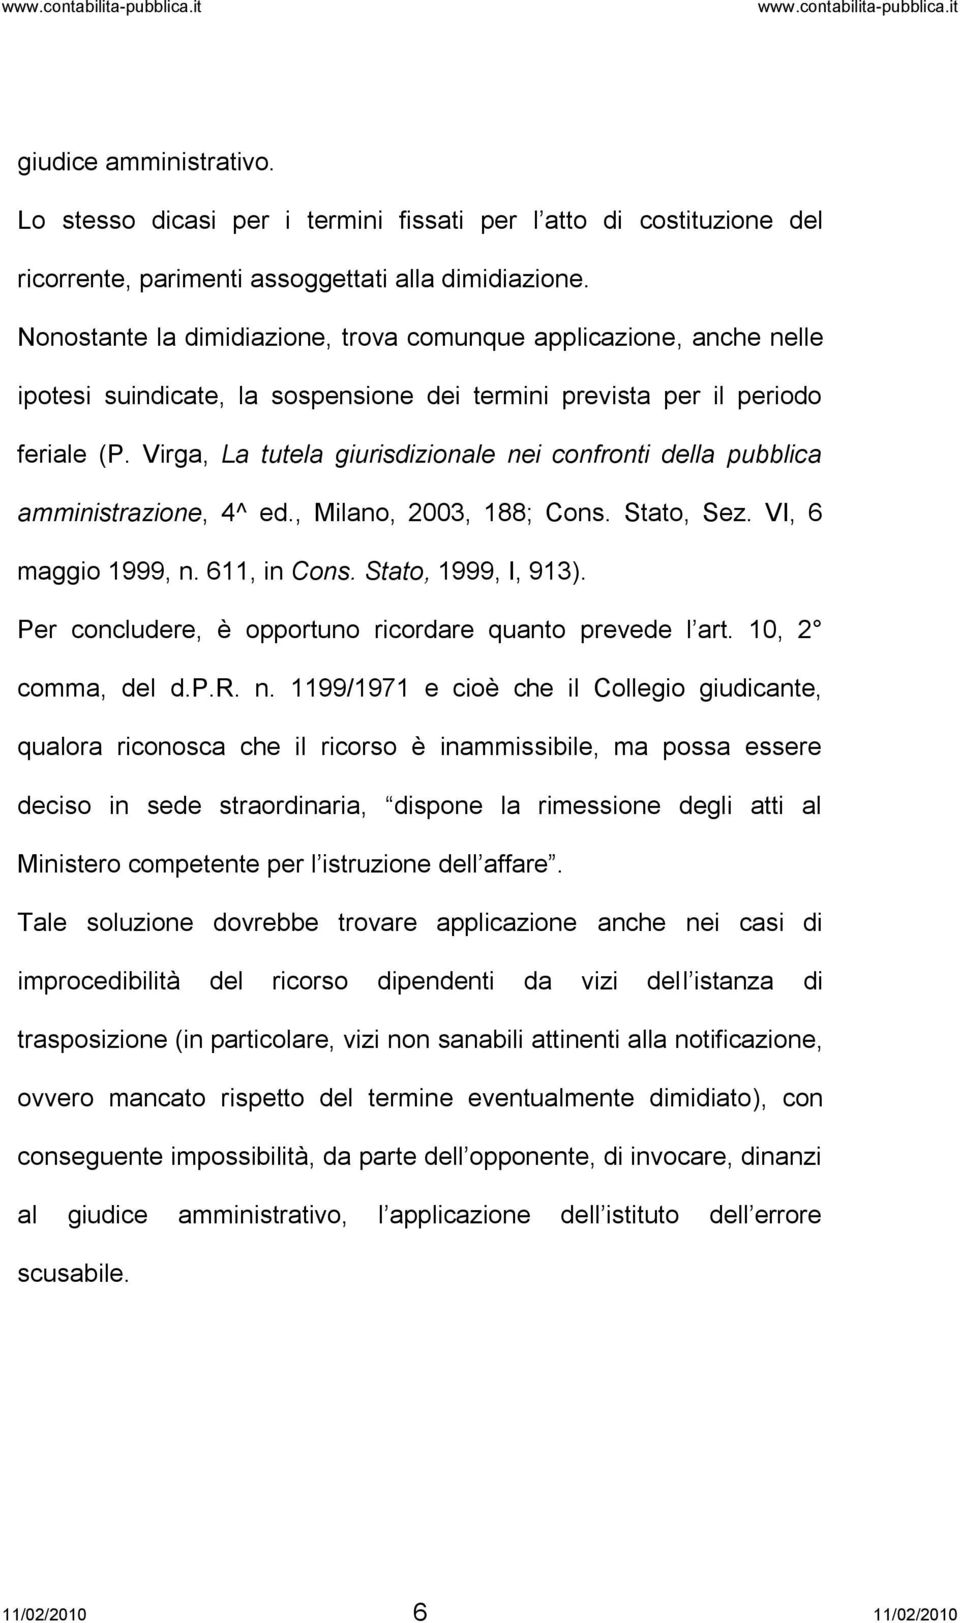 Virga, La tutela giurisdizionale nei confronti della pubblica amministrazione, 4^ ed., Milano, 2003, 188; Cons. Stato, Sez. VI, 6 maggio 1999, n. 611, in Cons. Stato, 1999, I, 913).